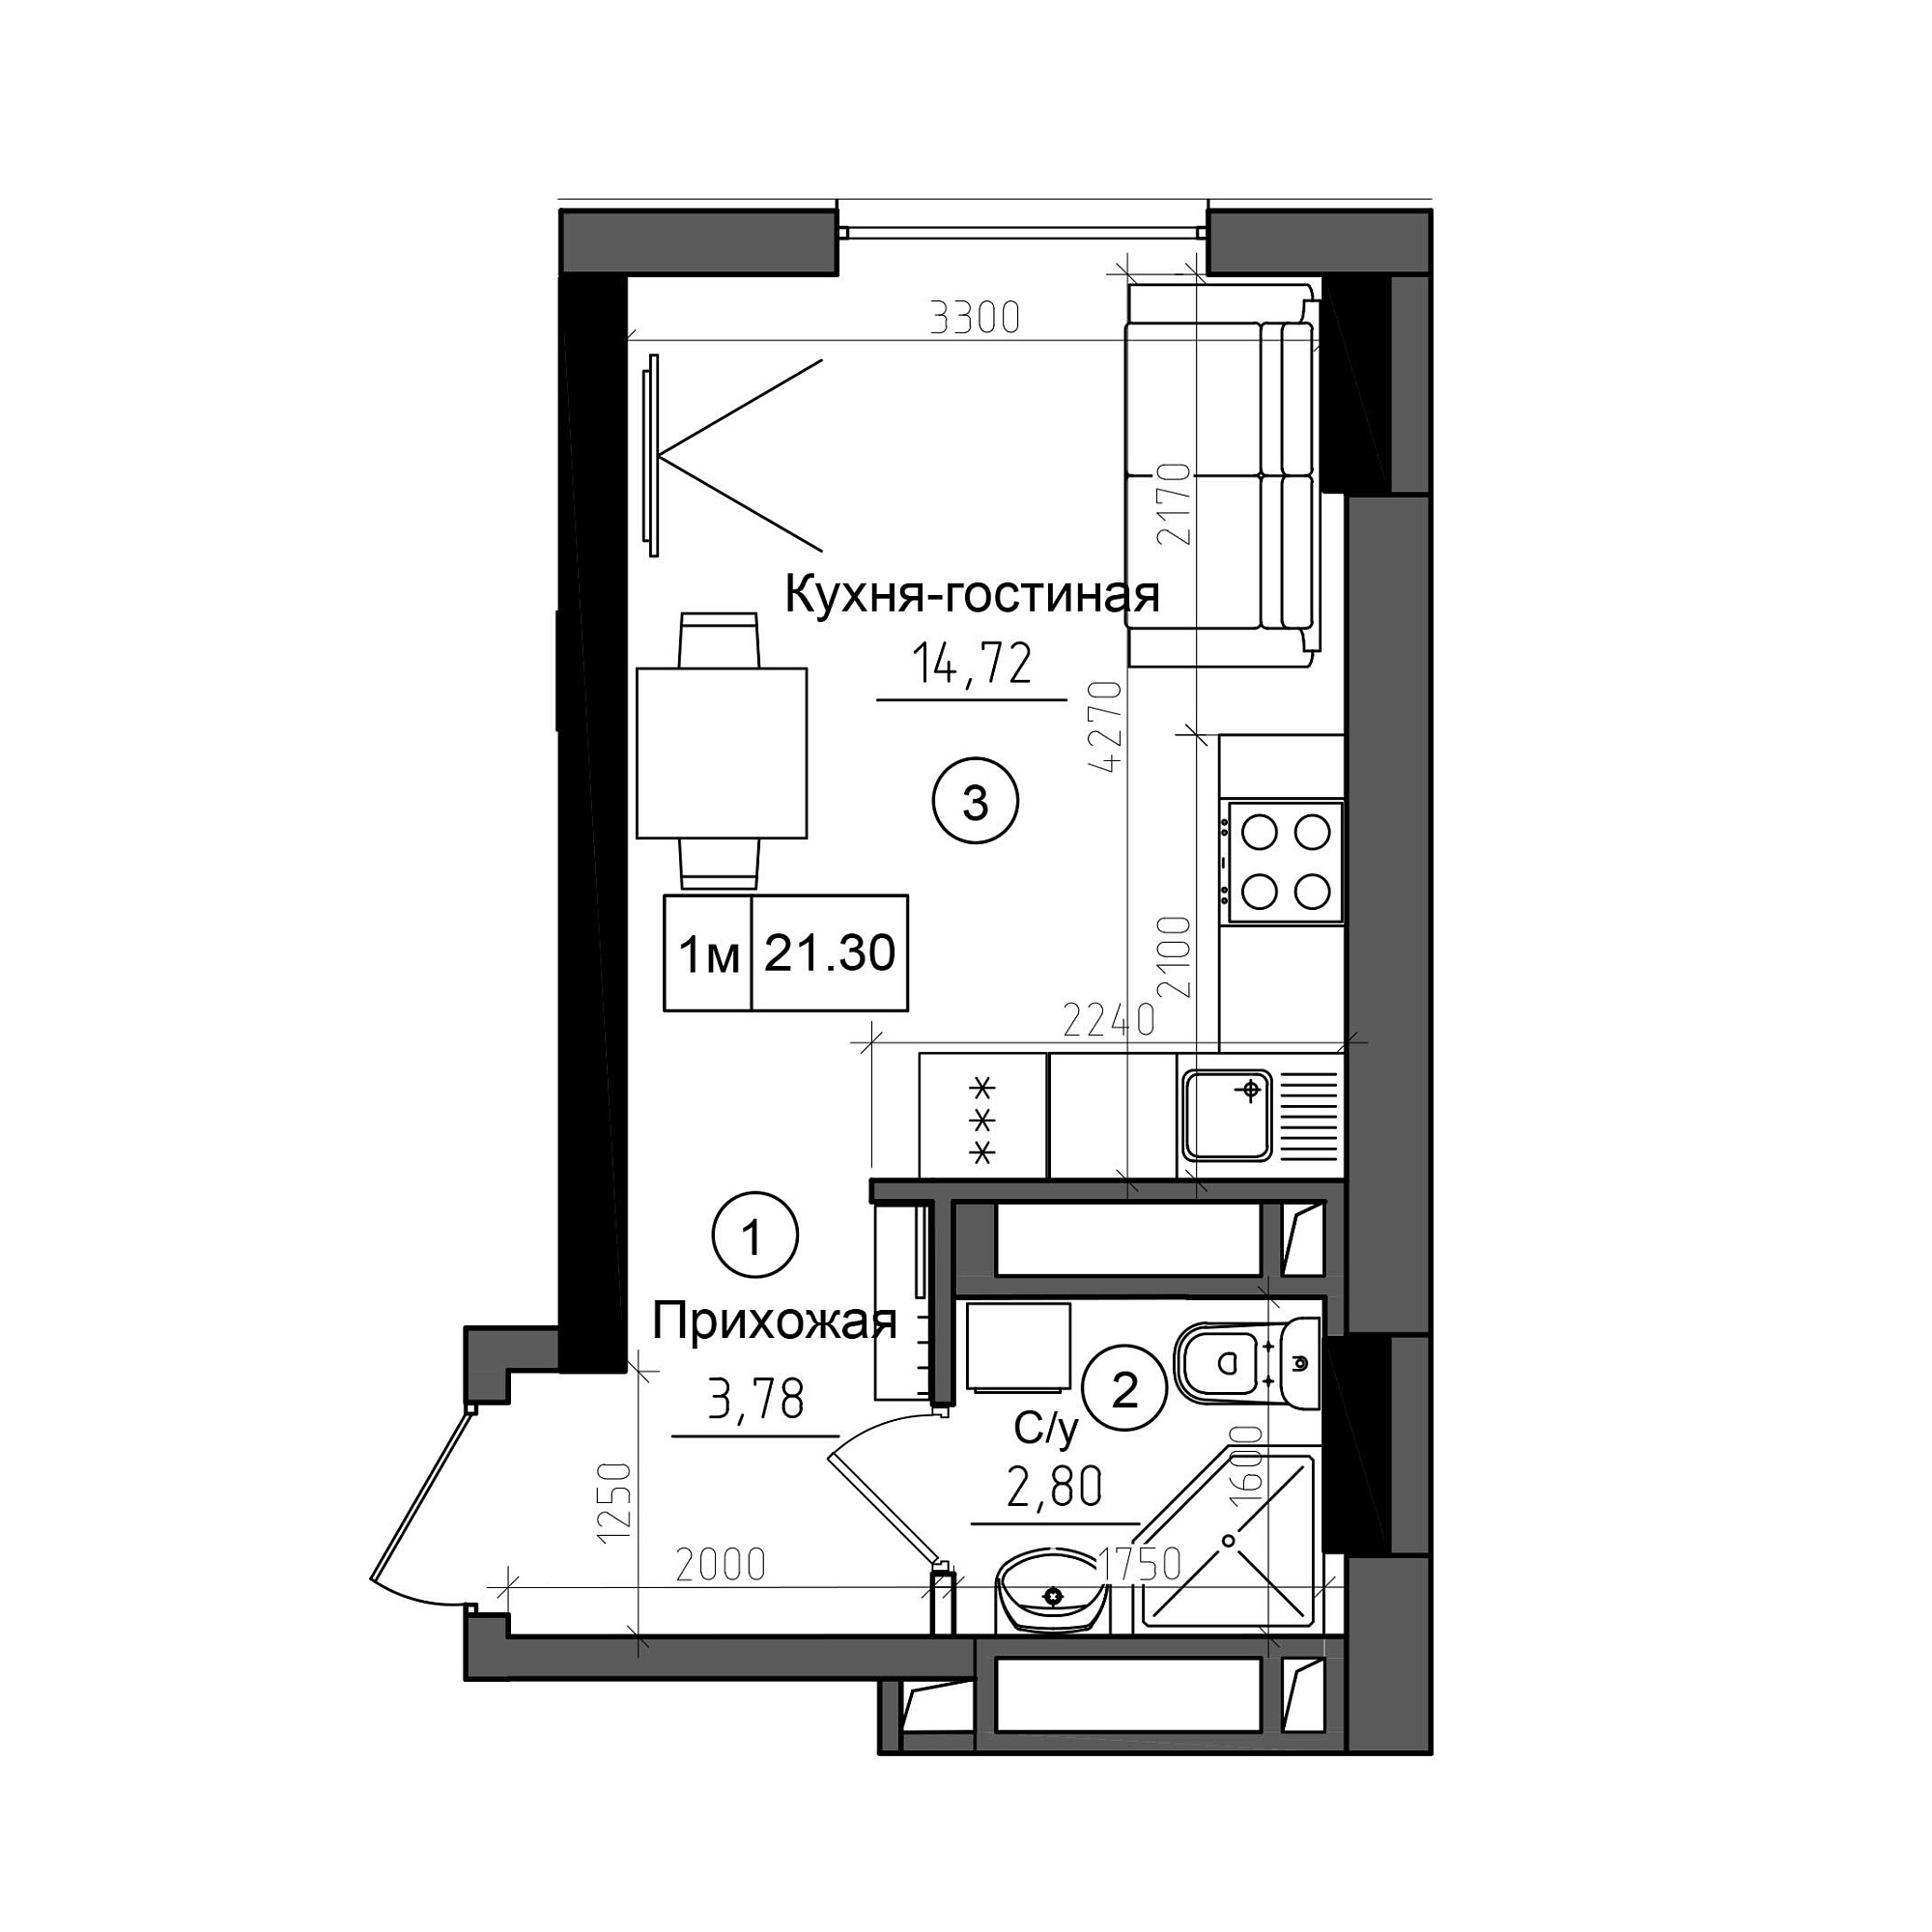 Планування Smart-квартира площею 21.3м2, AB-20-07/0004а.